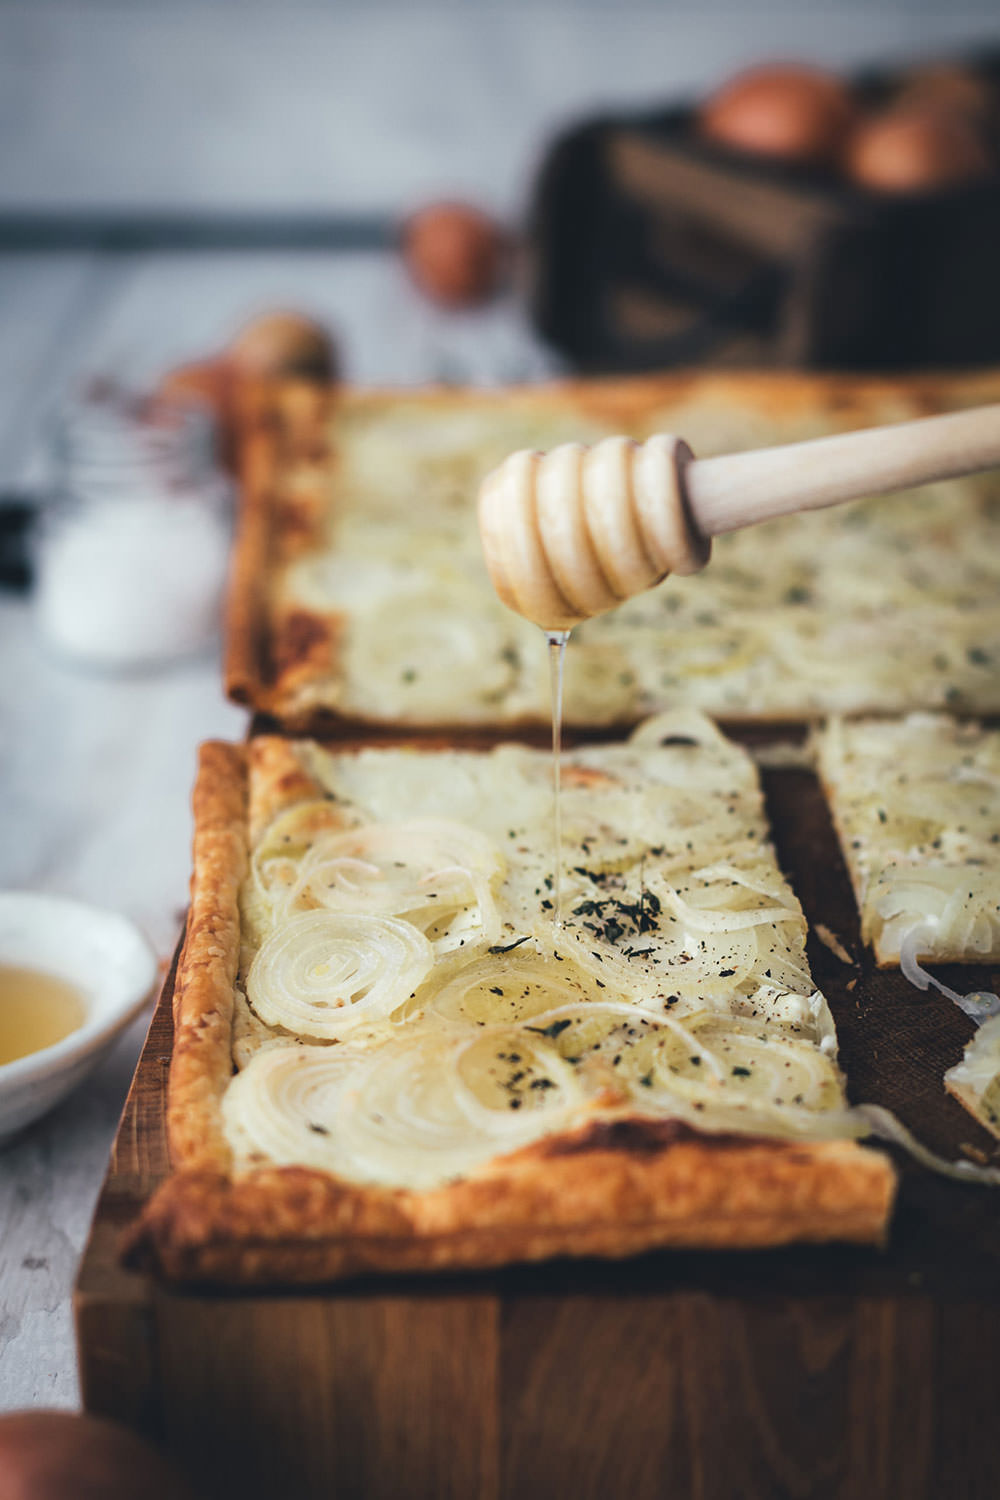 Rezept für einfache Zwiebeltarte | leckere Blätterteig-Tarte mit frischen Zwiebeln, Crème fraîche, Thymian und Honig – perfekt für die schnelle Feierabendküche | moeyskitchen.com #zwiebel #zwiebeln #tarte #zwiebeltarte #blätterteig #vegetarisch #feierabendküche #einfacherezepte #einfachkochen #rezept #foodblog